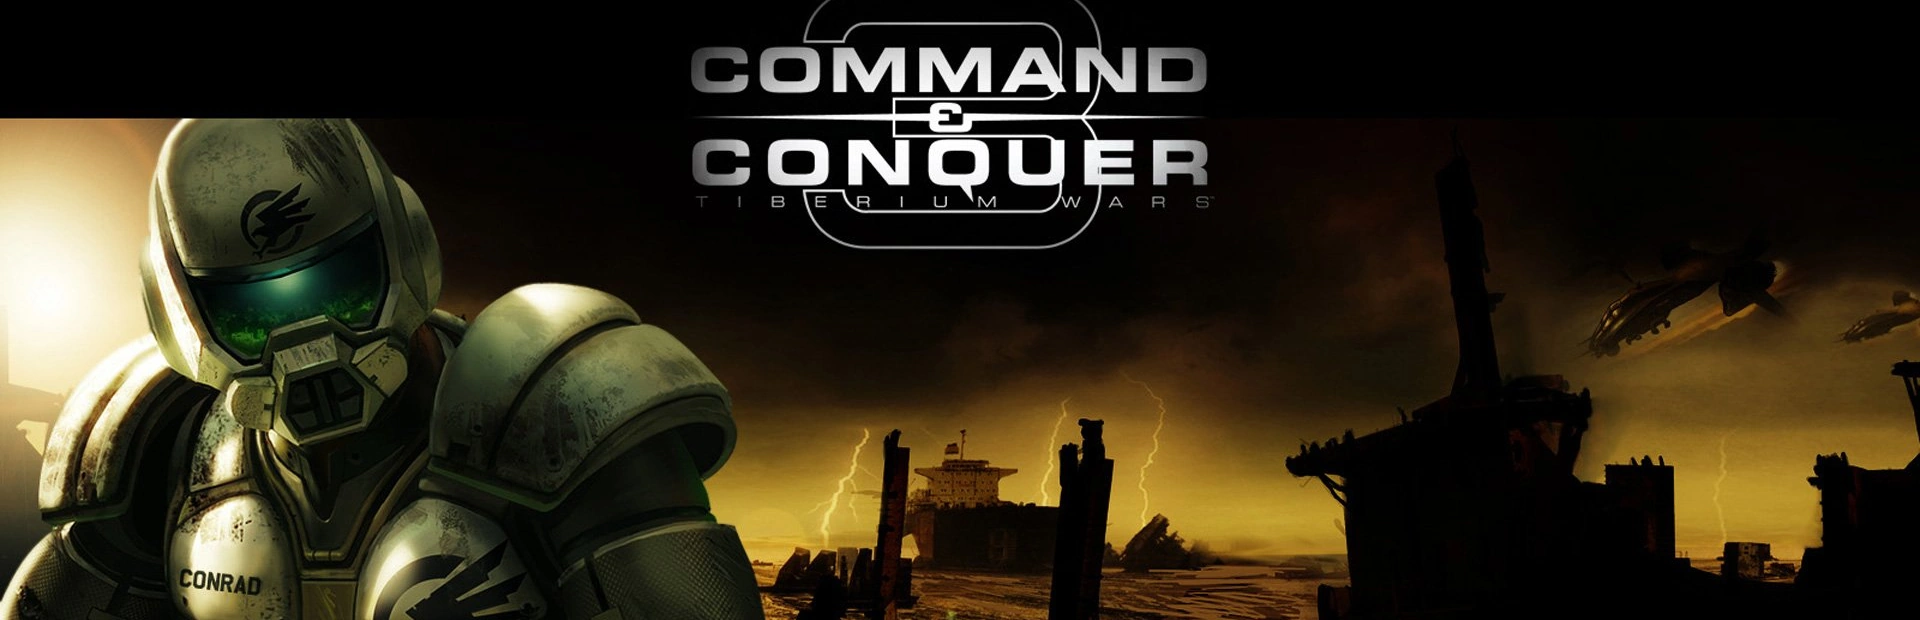 دانلود بازیCommand & Conquer 3: Tiberium Wars برای PC|گیمباتو